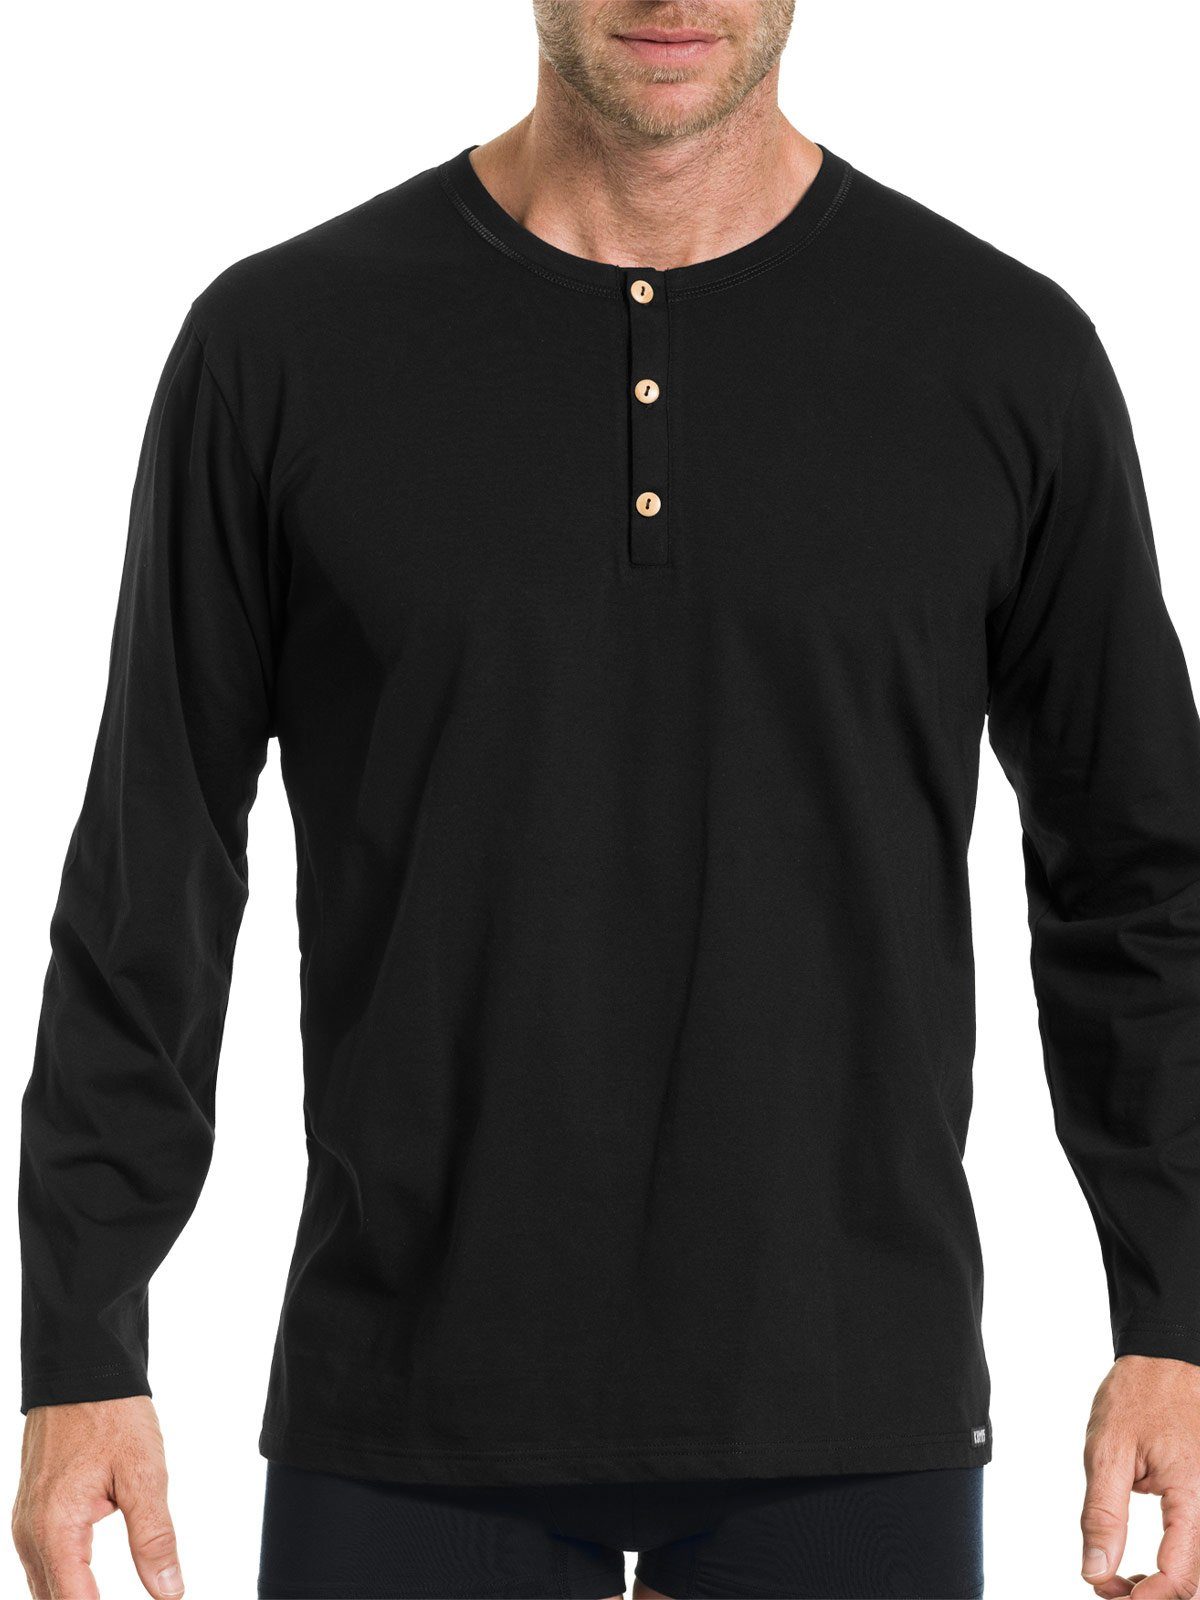 (Stück, Bio Unterhemd KUMPF schwarz Herren Markenqualität Cotton langarm hohe Shirt 1-St)